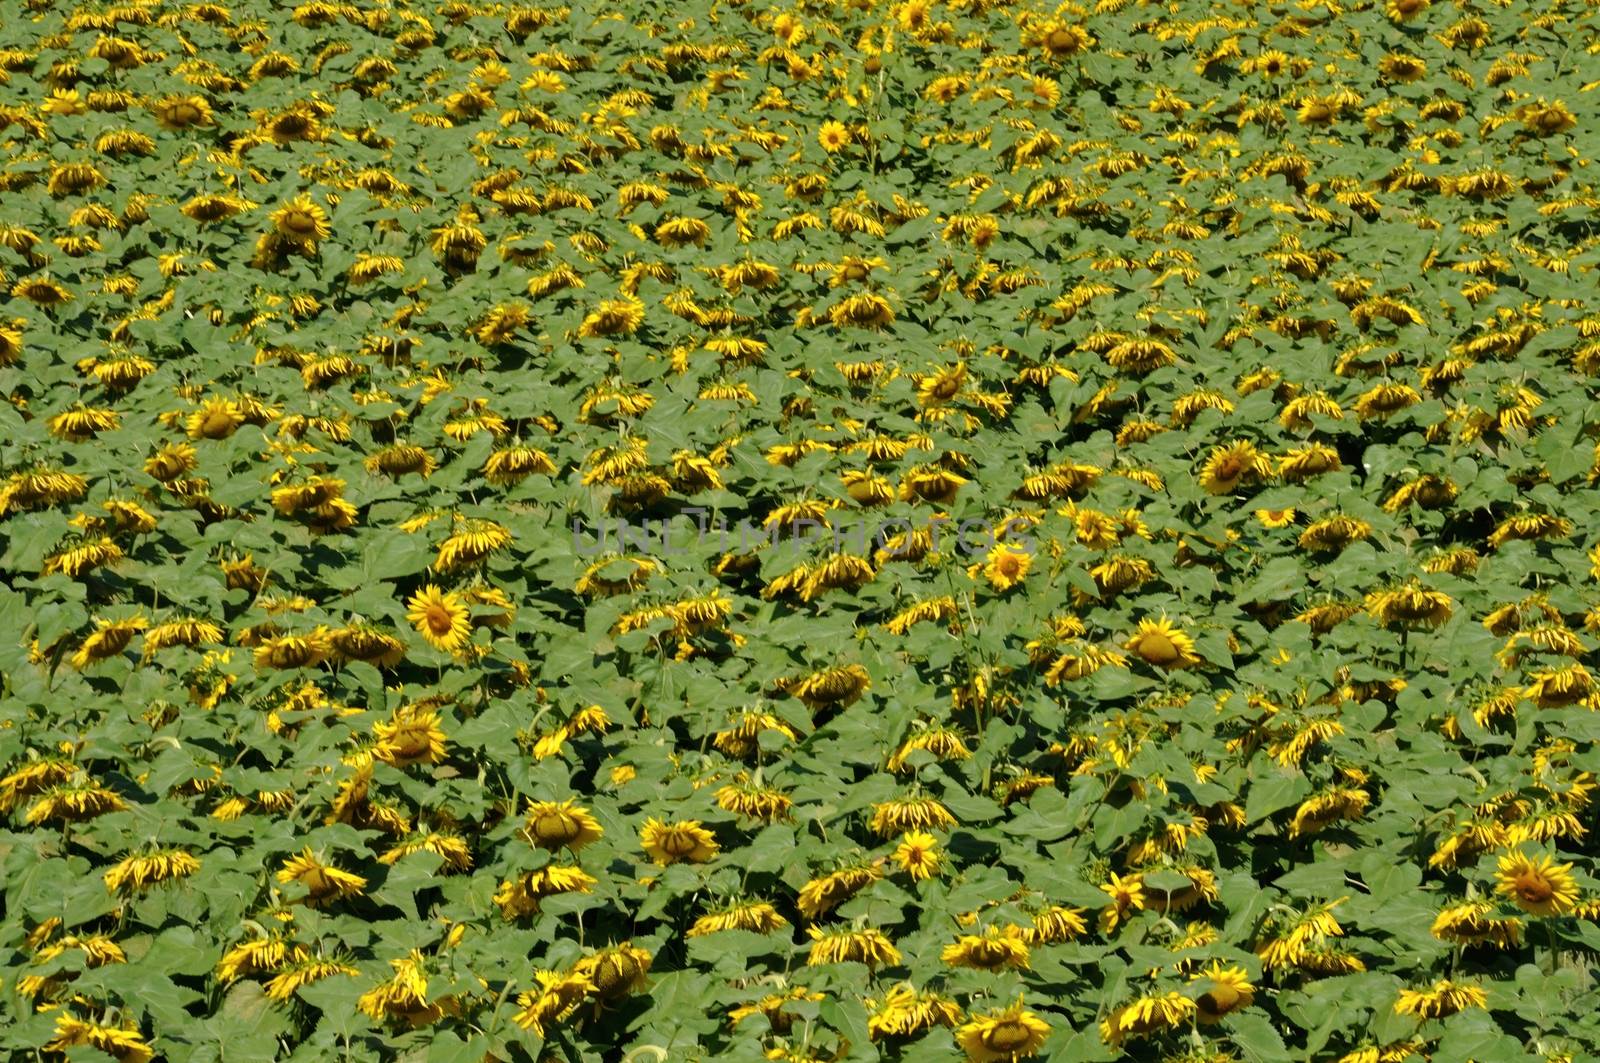 sun flower field  by BZH22